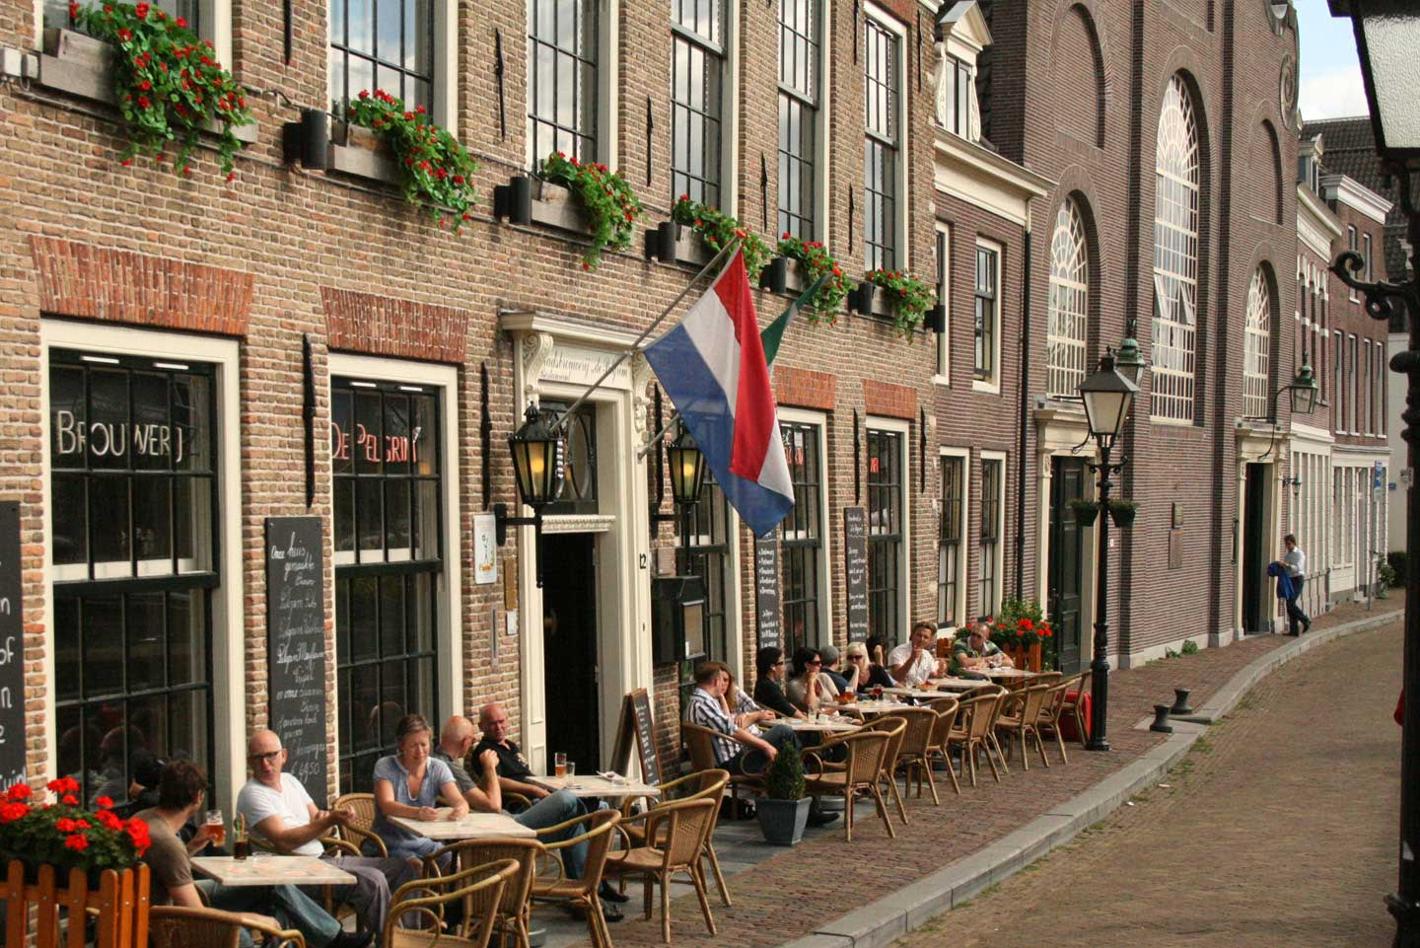 Foto Stadsbrouwerij de Pelgrim in Rotterdam, Eten & drinken, Tussendoor, Borrel, Diner - #2